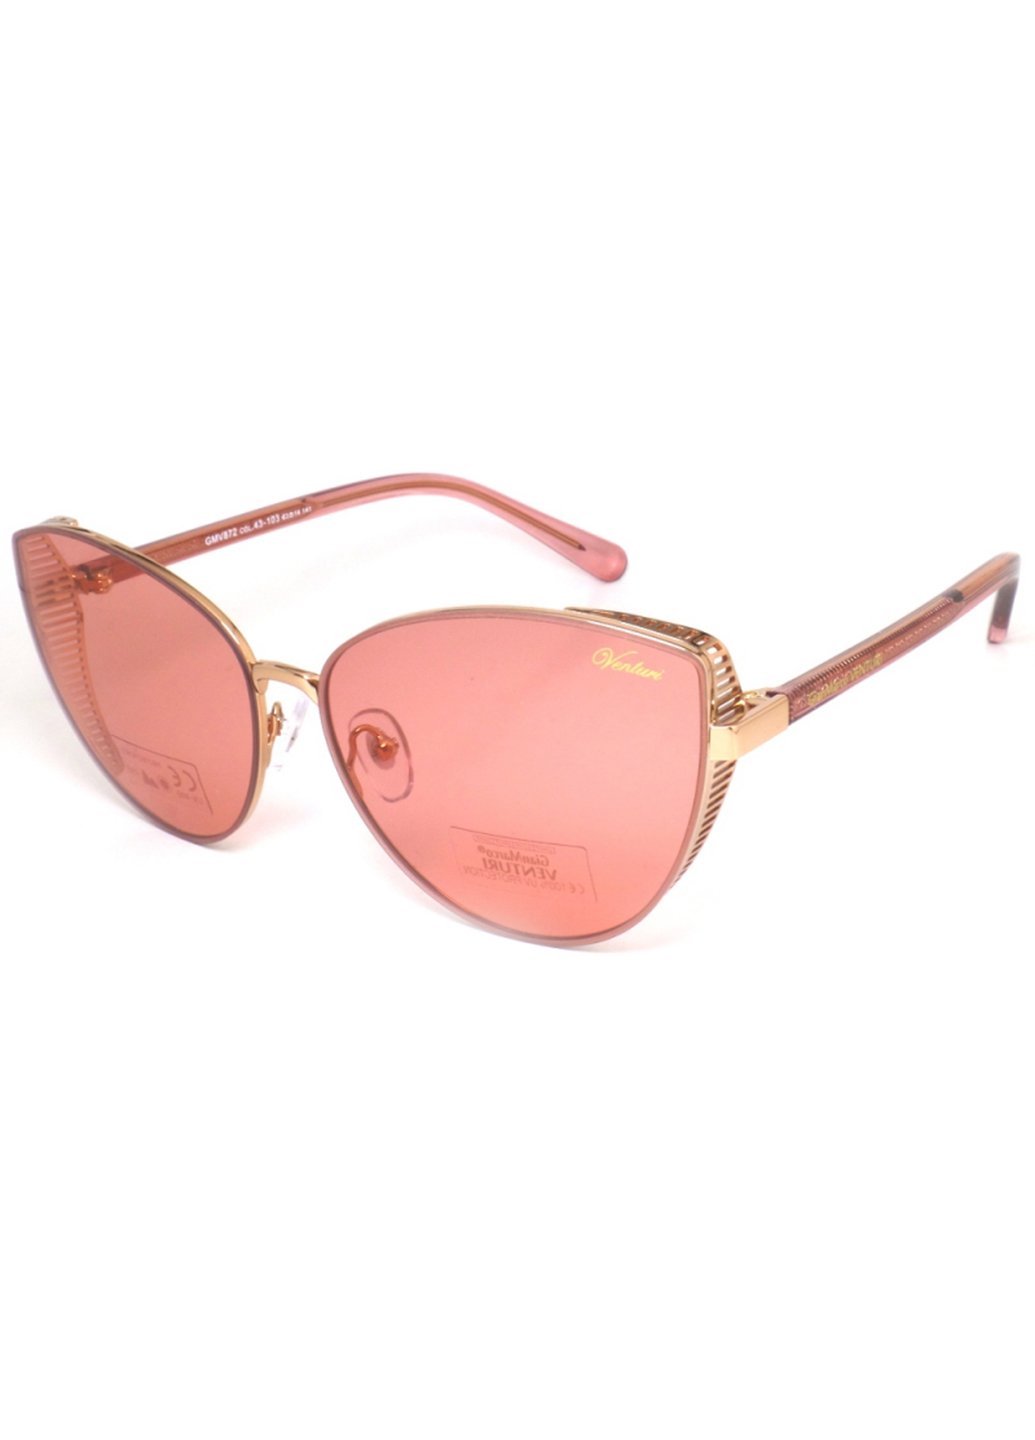 Купить Женские солнцезащитные очки Gian Marco VENTURI GMV872 130008 - Розовый в интернет-магазине